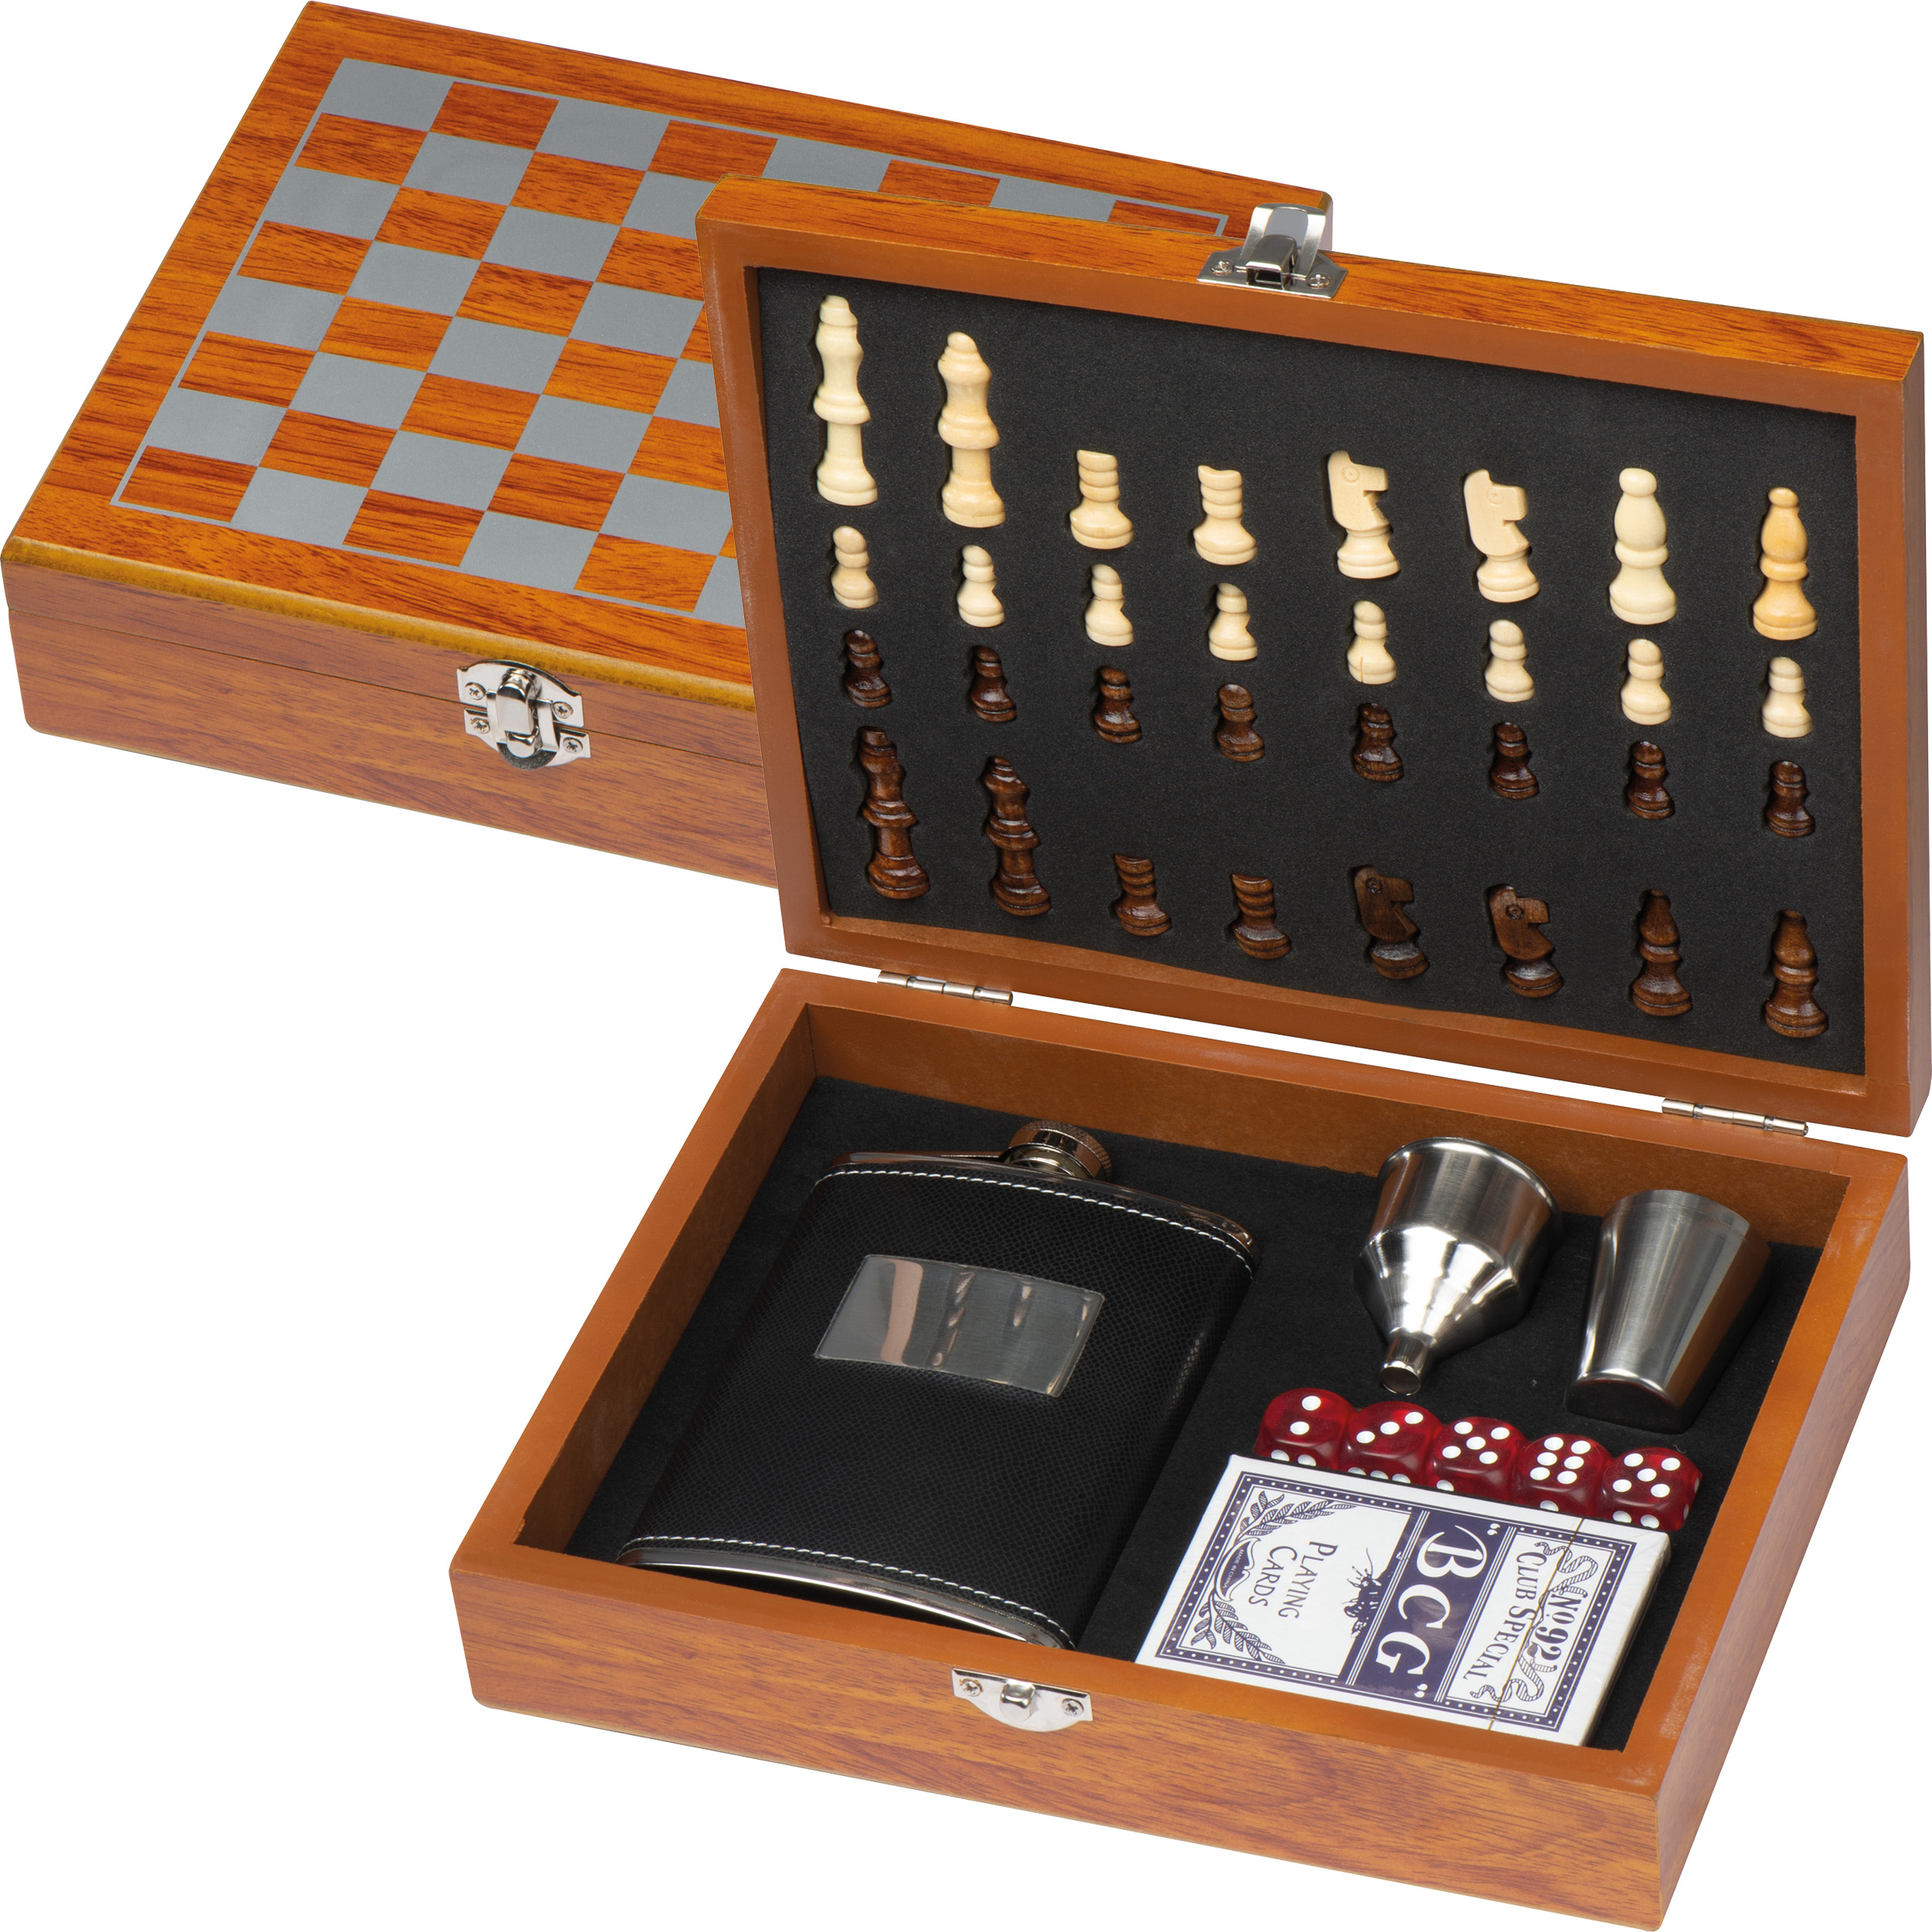 Spieleset mit Flachmann, Schach- und Kartenspiel